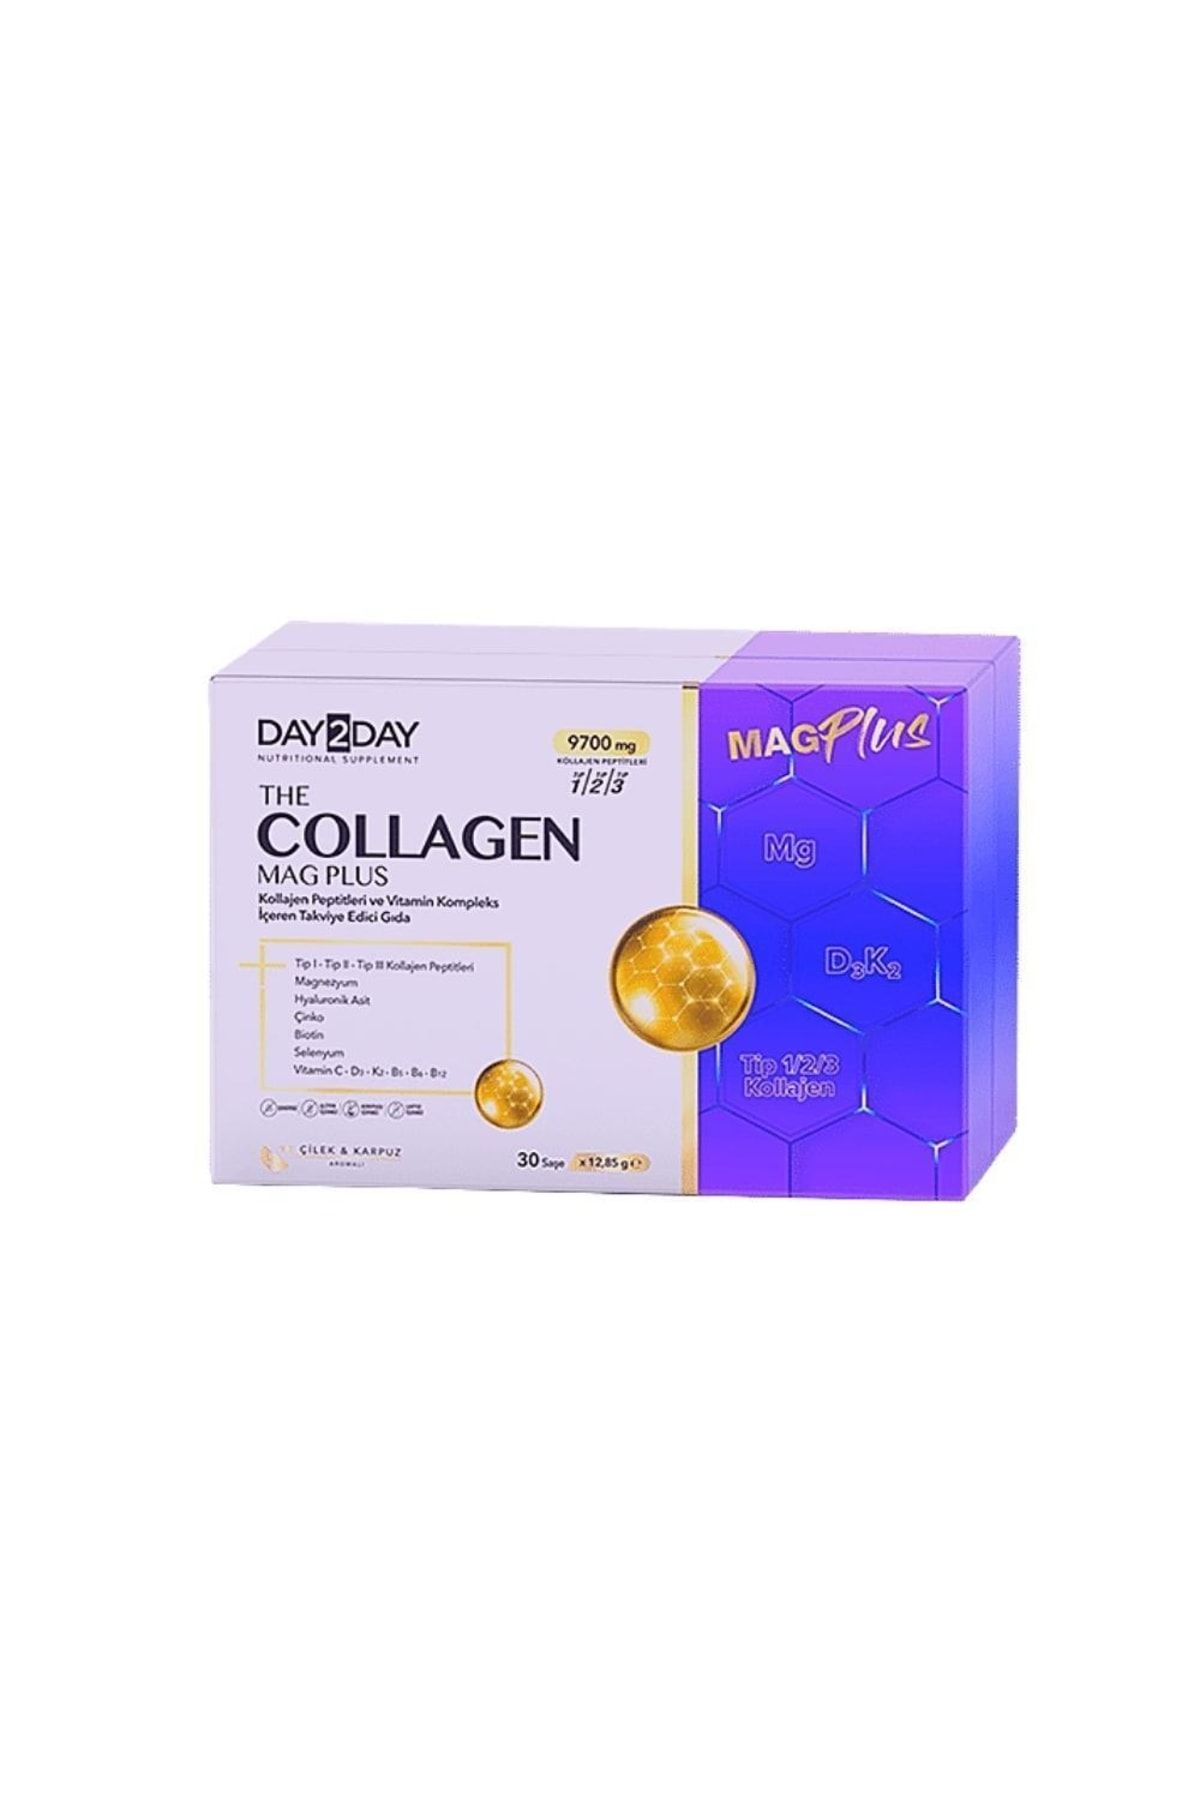 DAY2DAY The Collagen Mag Plus Çilek Ve Karpuz Aromalı Takviye Edici Gıda 9700mg 30 Şase